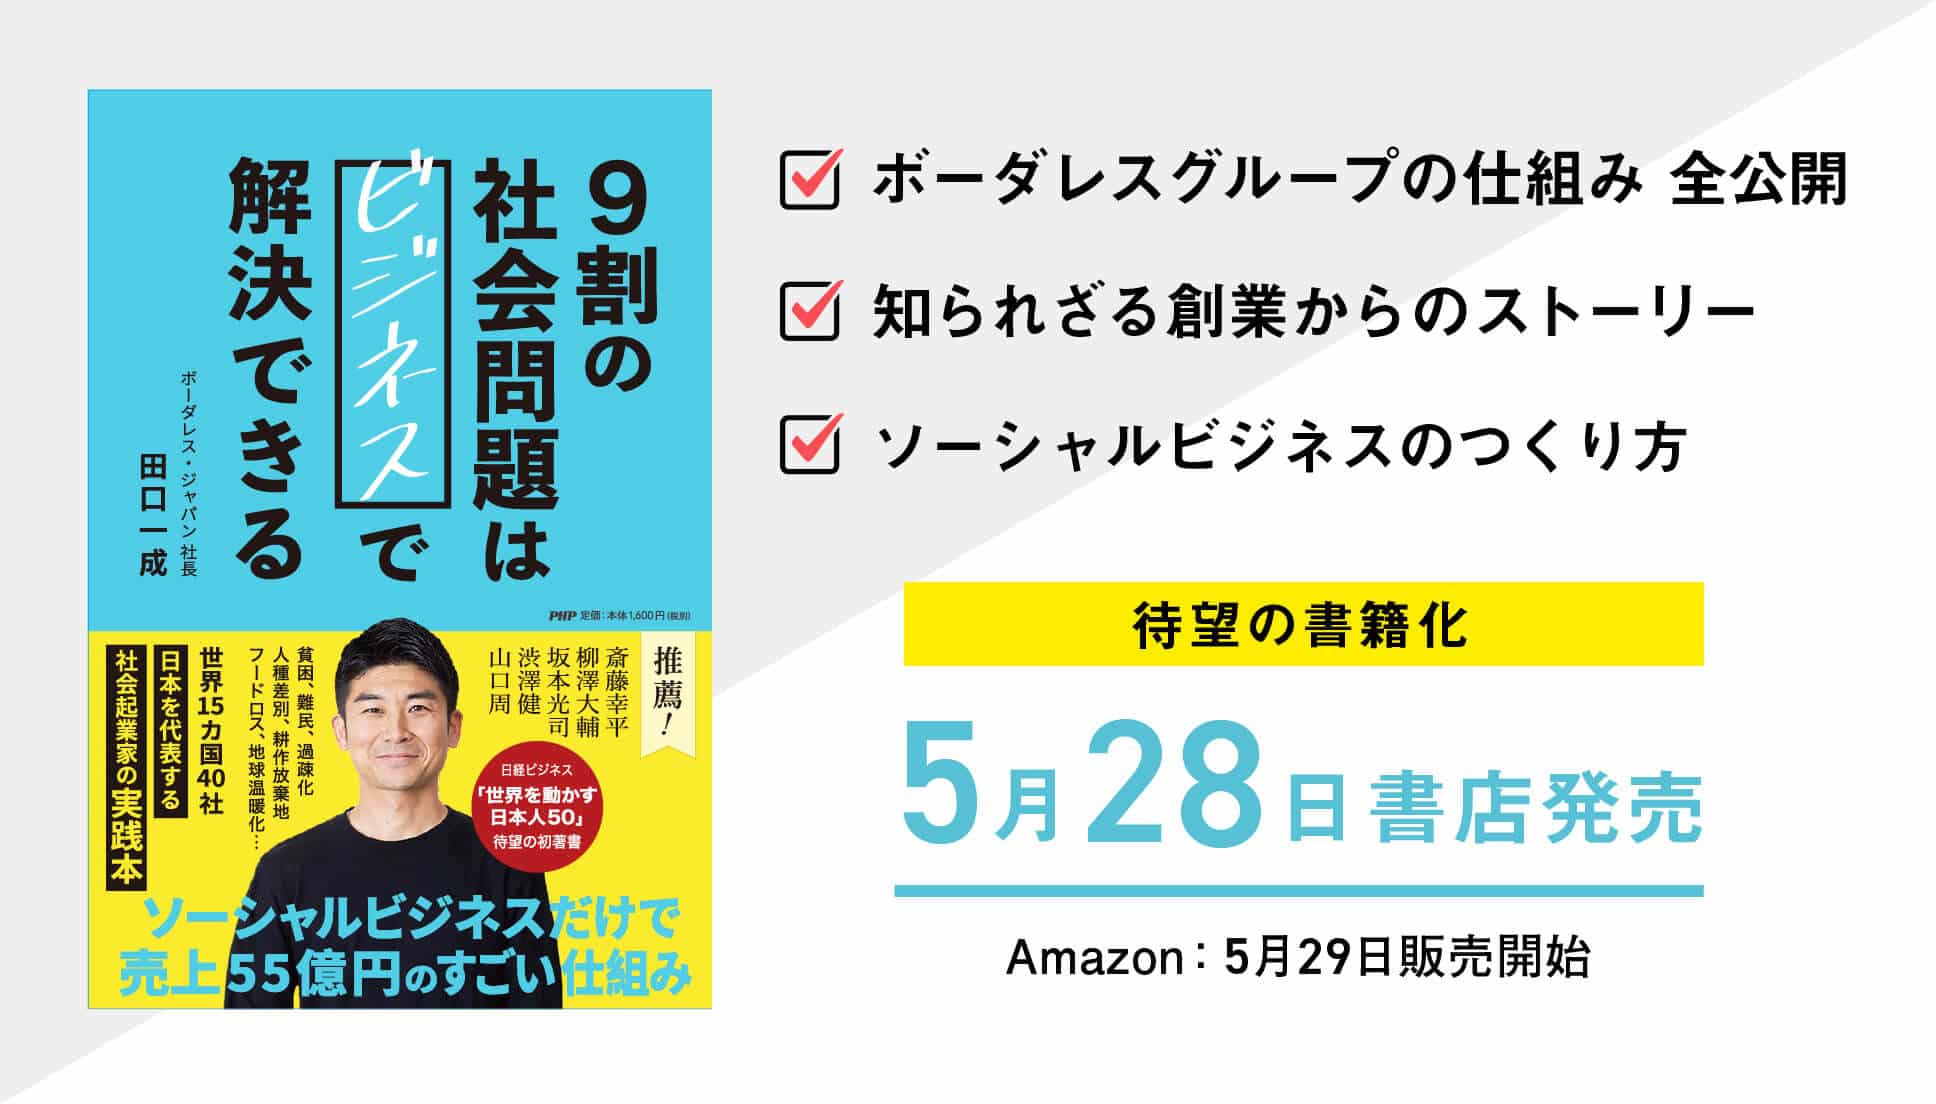 【Amazonランキング1位獲得】ボーダレス・ジャパン初の書籍『9割の社会問題はビジネスで解決できる』を発売